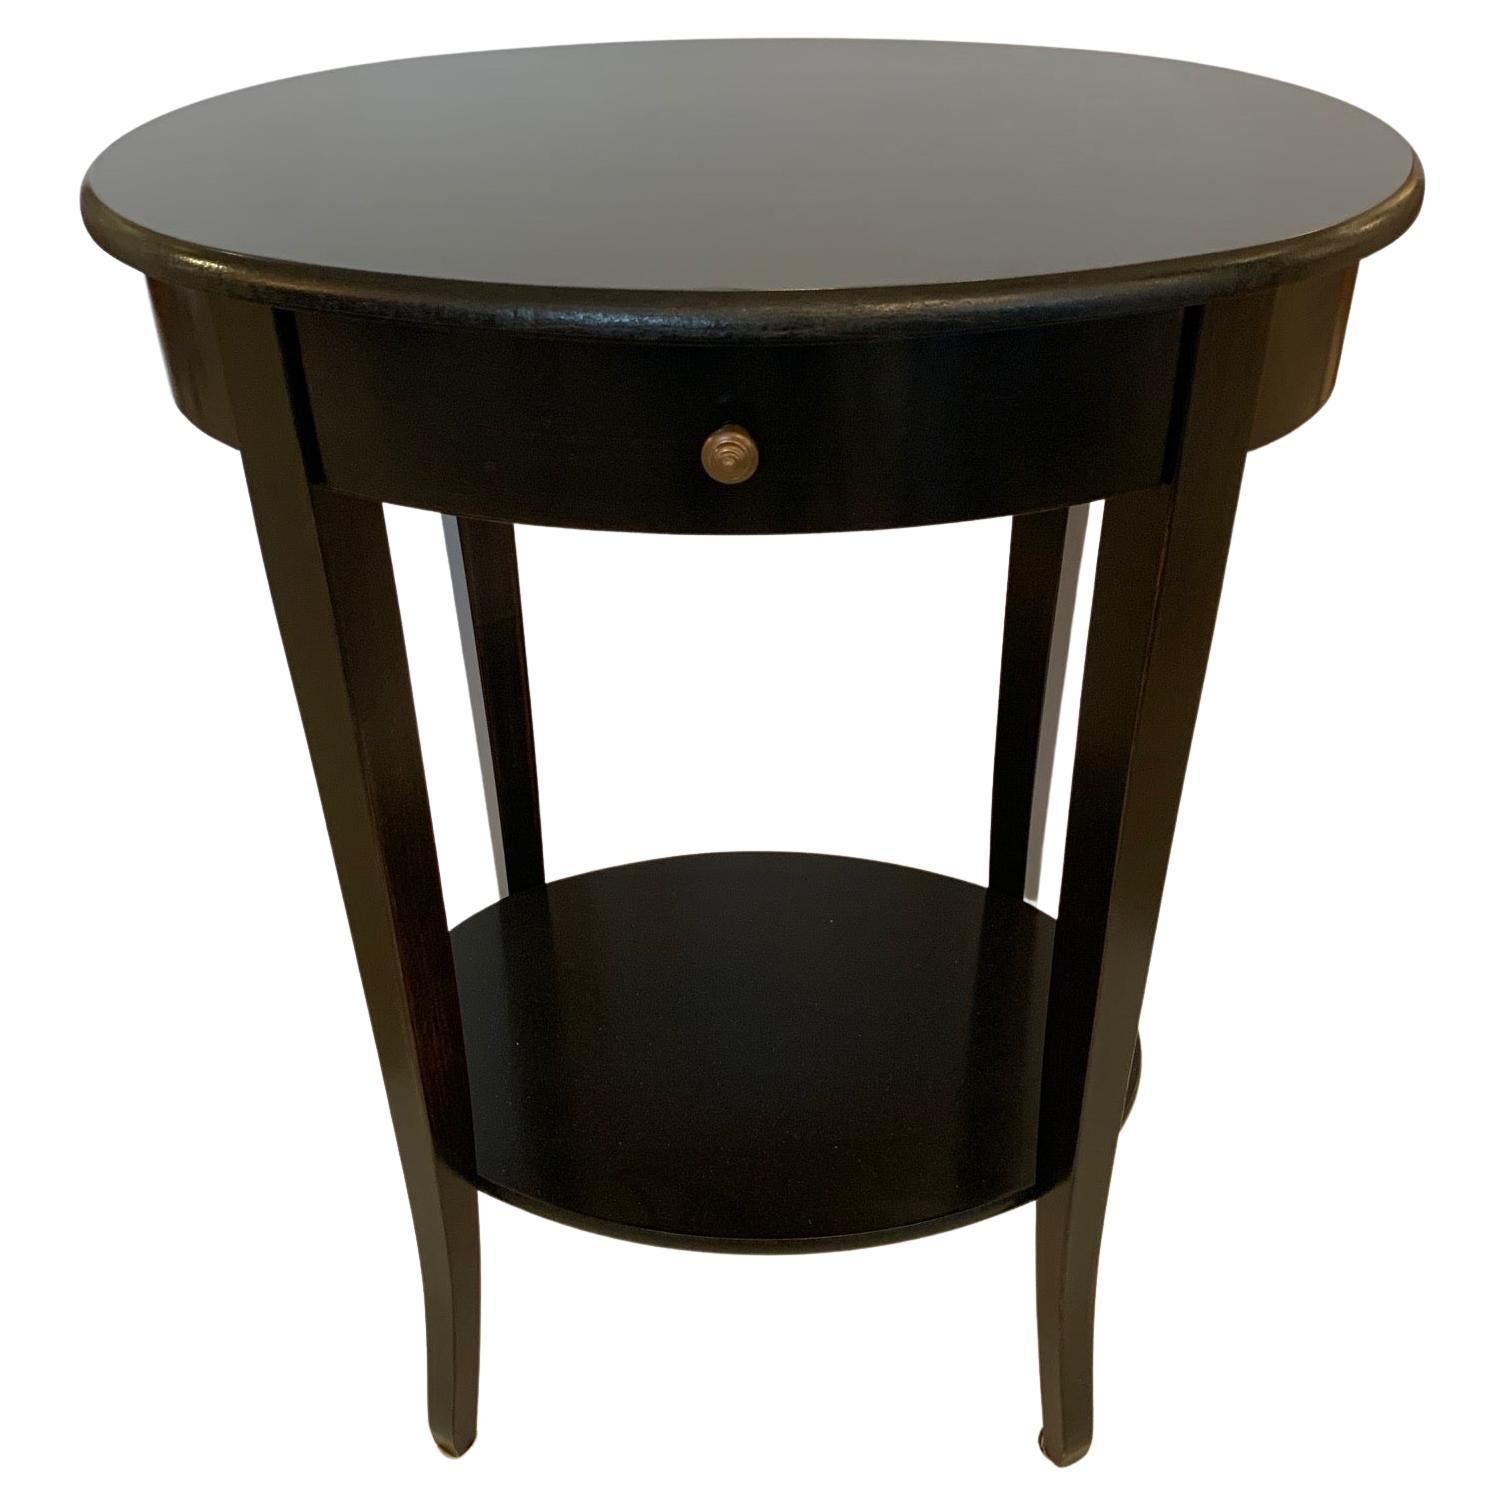 Belle table d'appoint ovale à deux niveaux en finition ébénisée Espresso avec finition